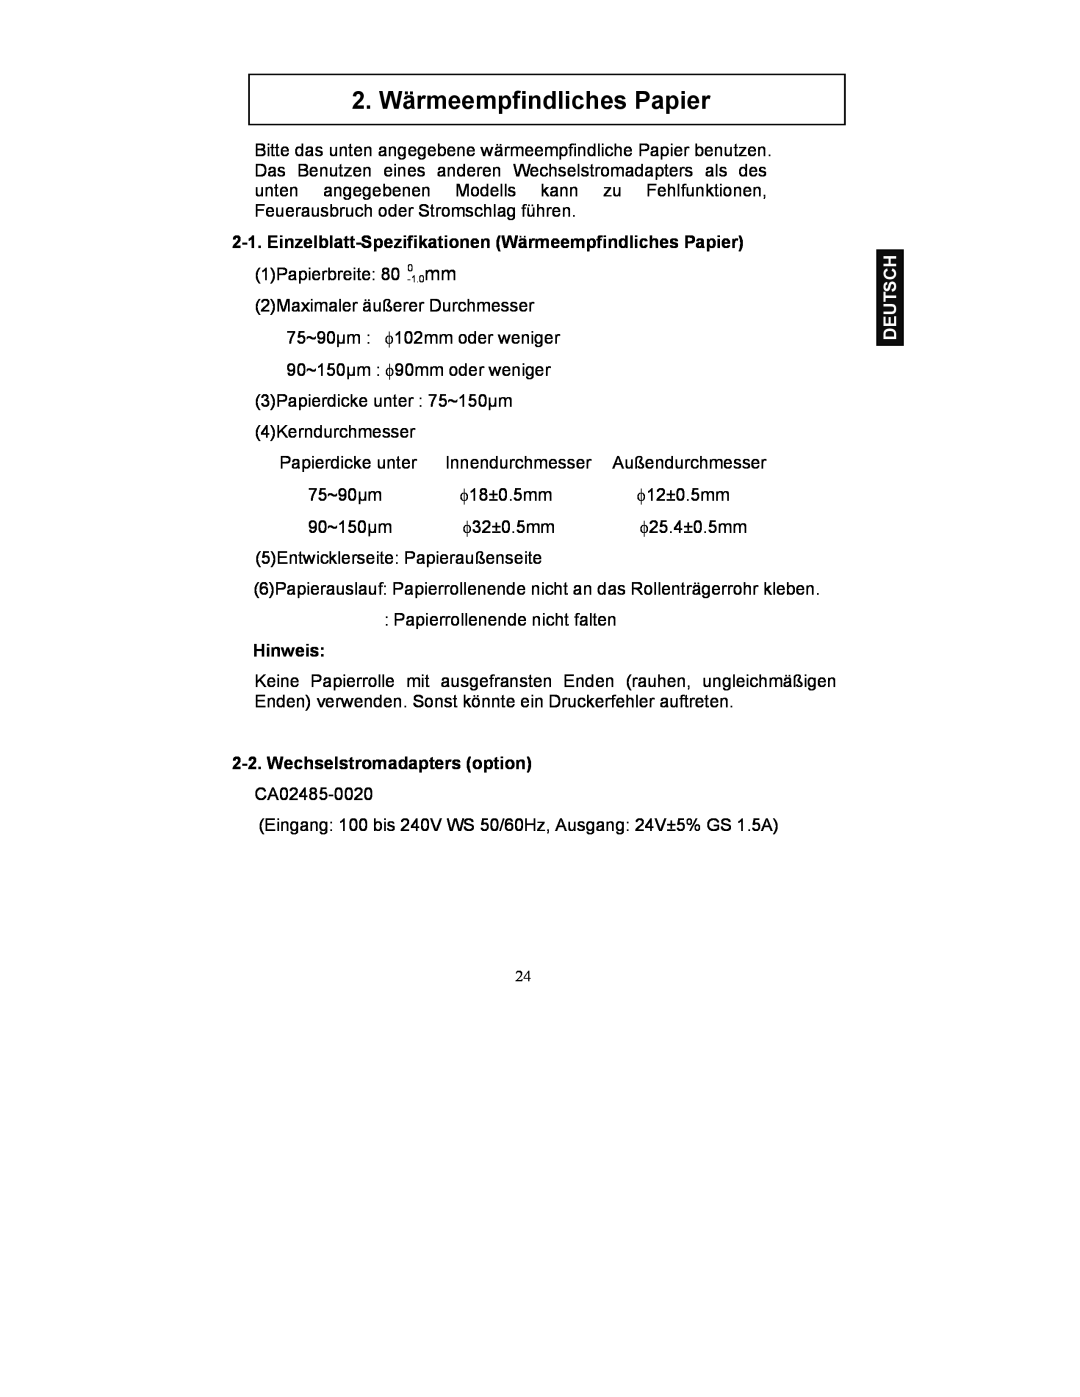 Fujitsu FP-410 2. Wärmeempfindliches Papier, Einzelblatt-Spezifikationen Wärmeempfindliches Papier, Hinweis, Deutsch 